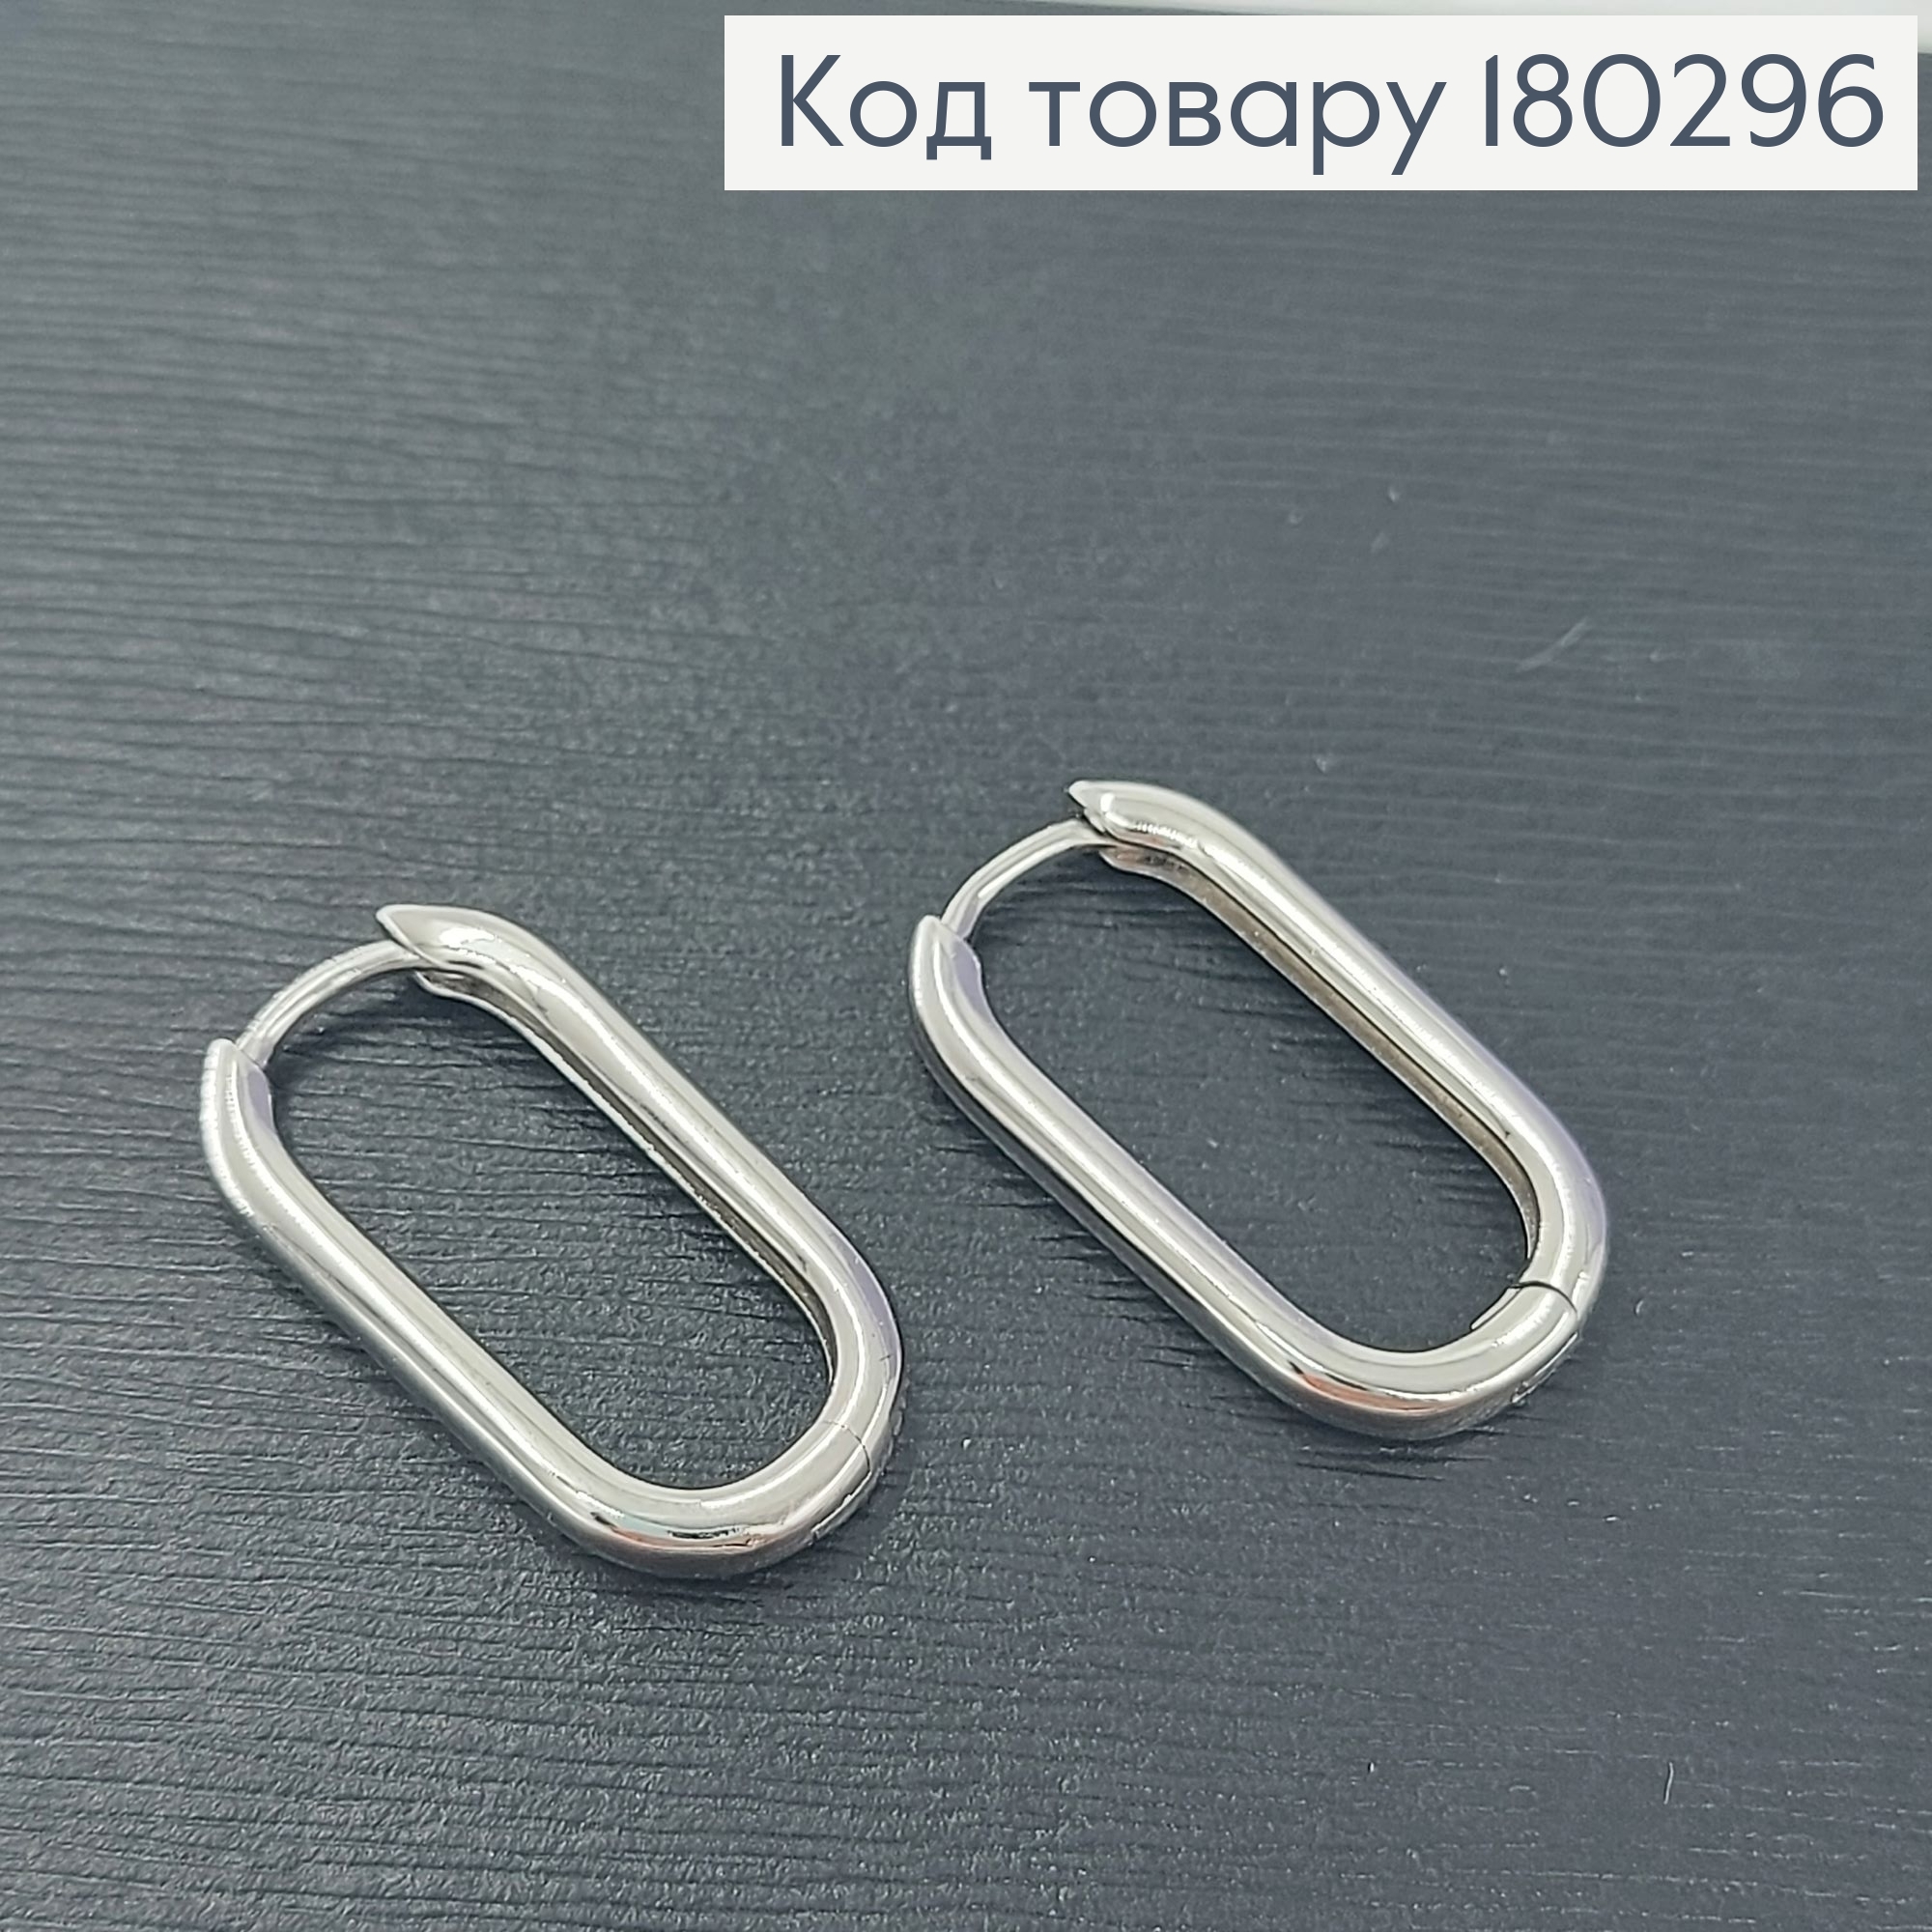 Сережки кільця овальні  родіроване медзолото Xuping 180296 фото 2